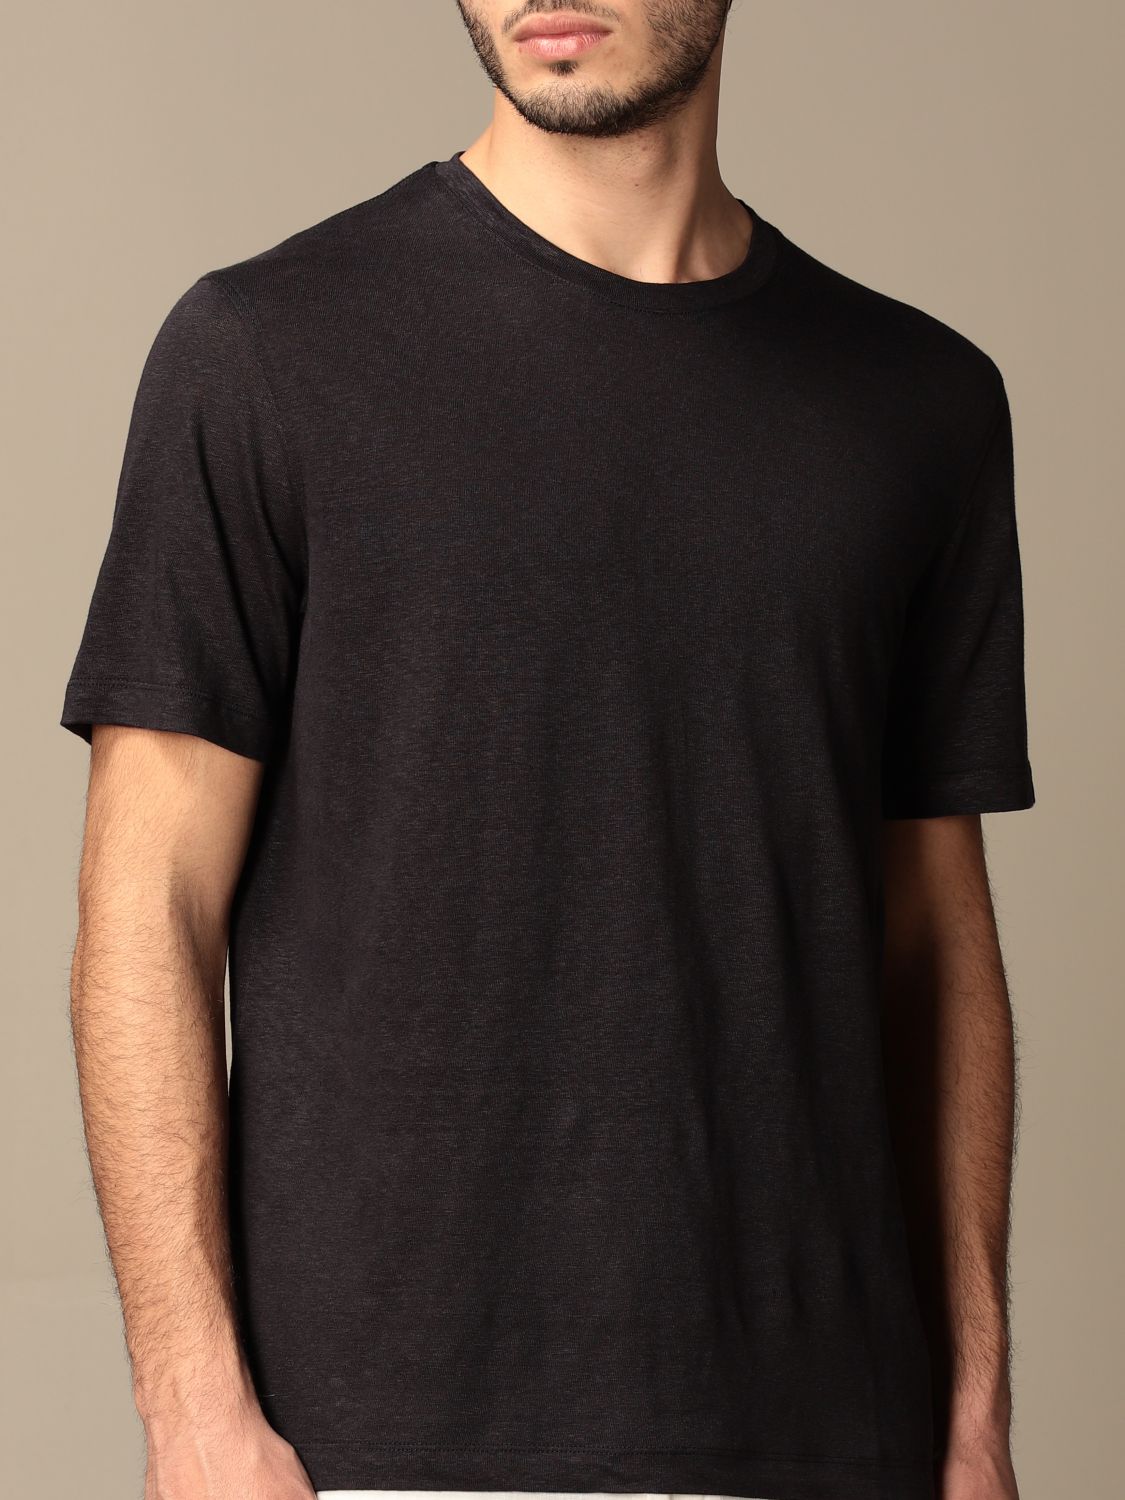 Zegna Outlet: Ermenegildo T-shirt in pure linen - Navy | T-Shirt Zegna ...